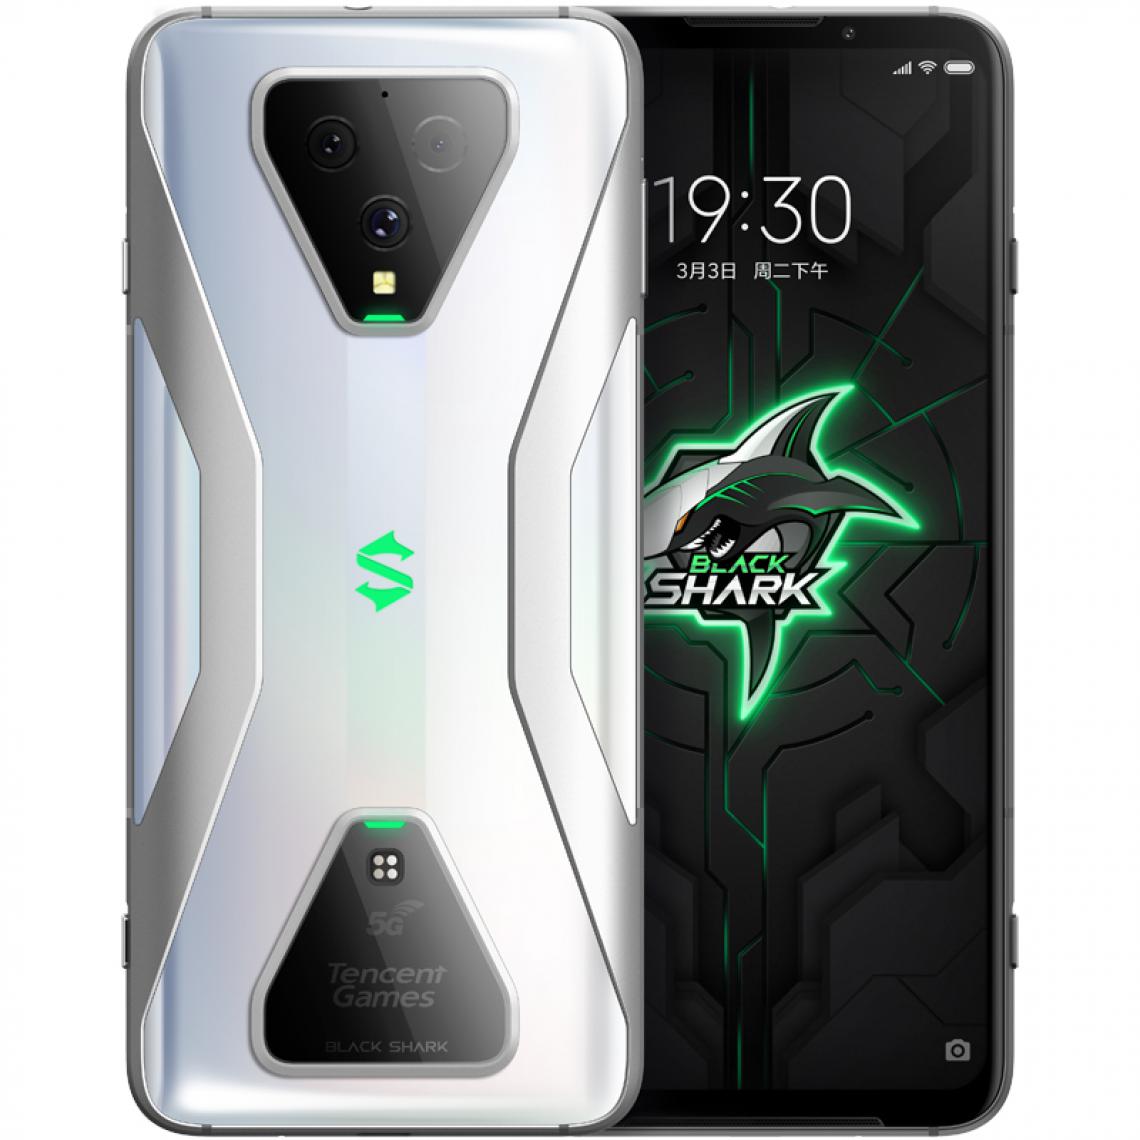 XIAOMI - BlackShark 3S - Smartphone Android